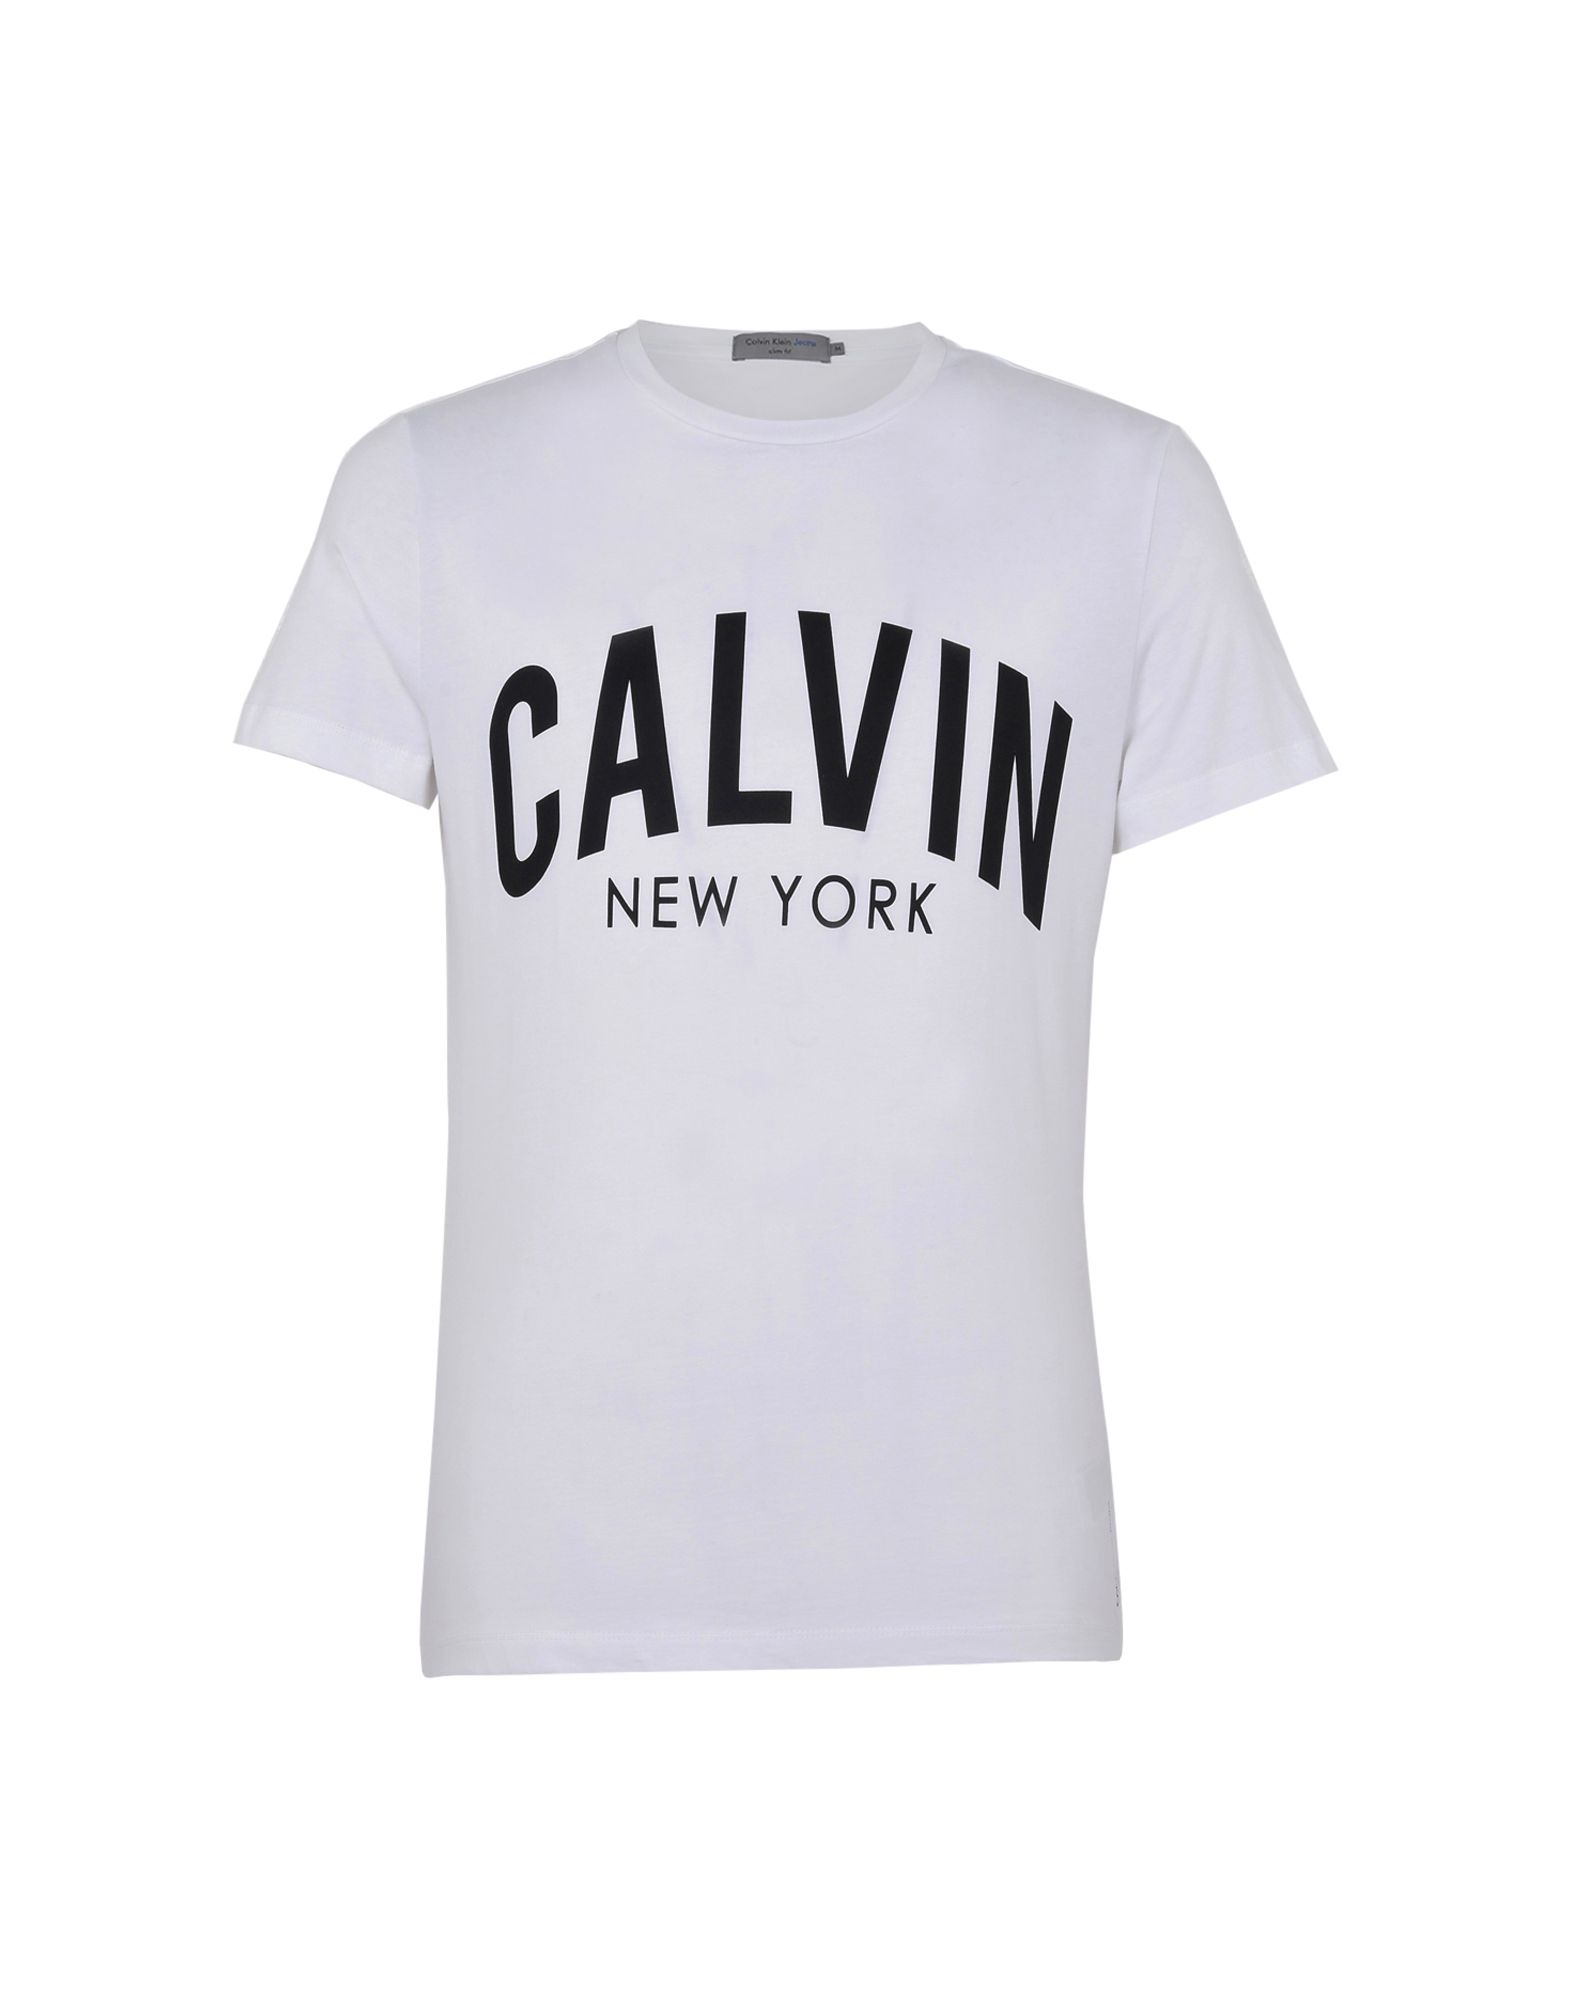 《送料無料》CALVIN KLEIN JEANS メンズ T シャツ ホワイト S コットン 100% EUROPE MEN 4500210271